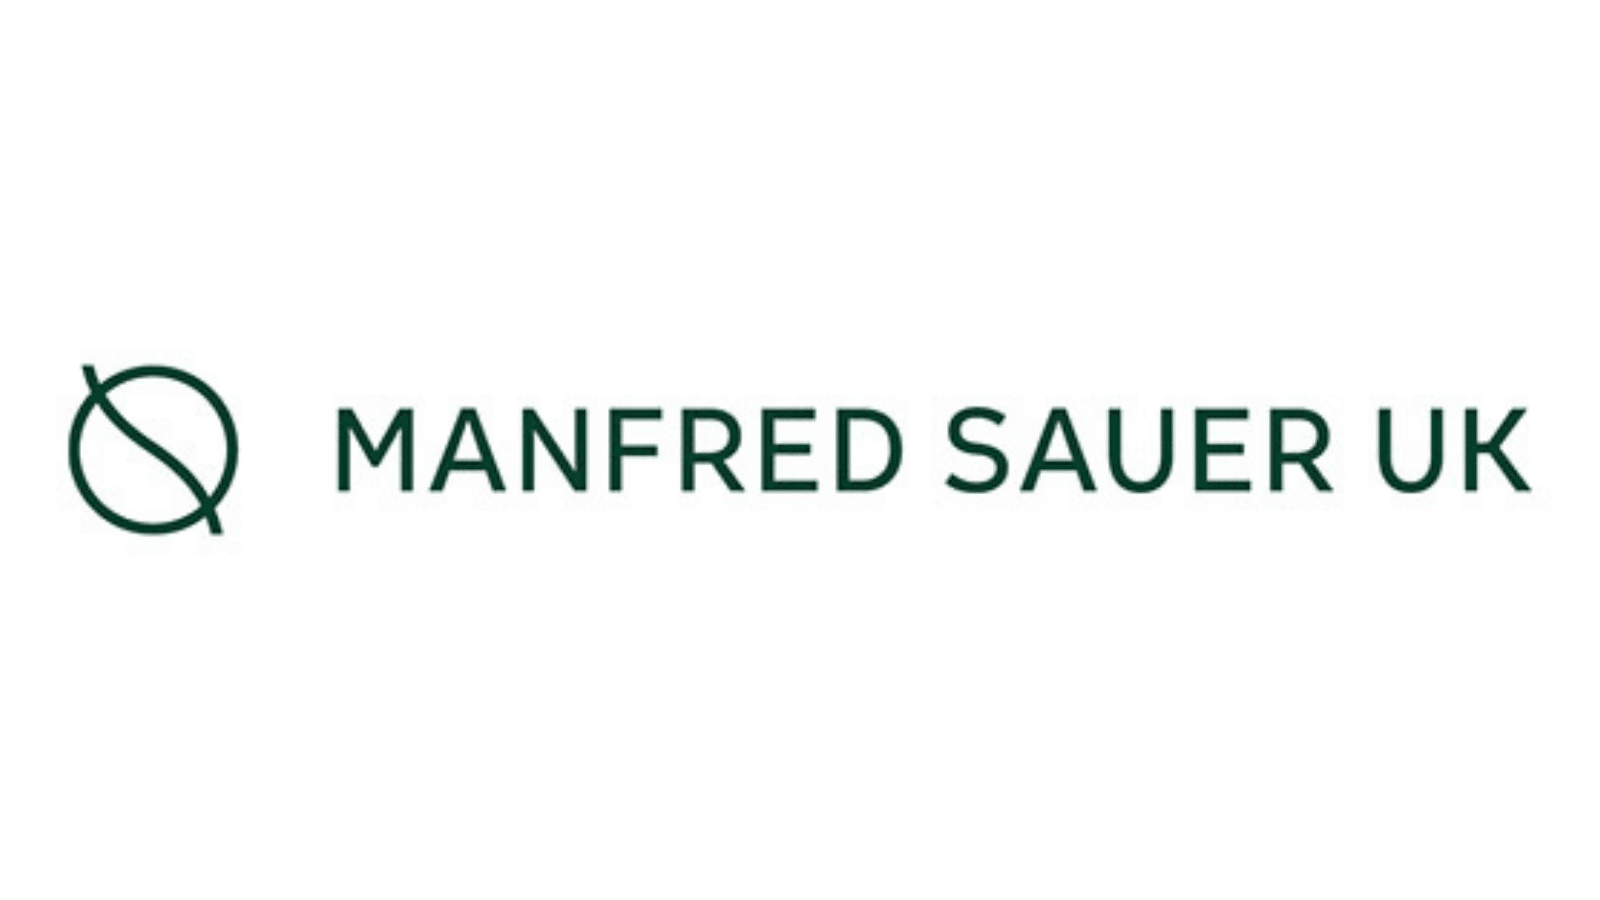 Manfred sauer logo